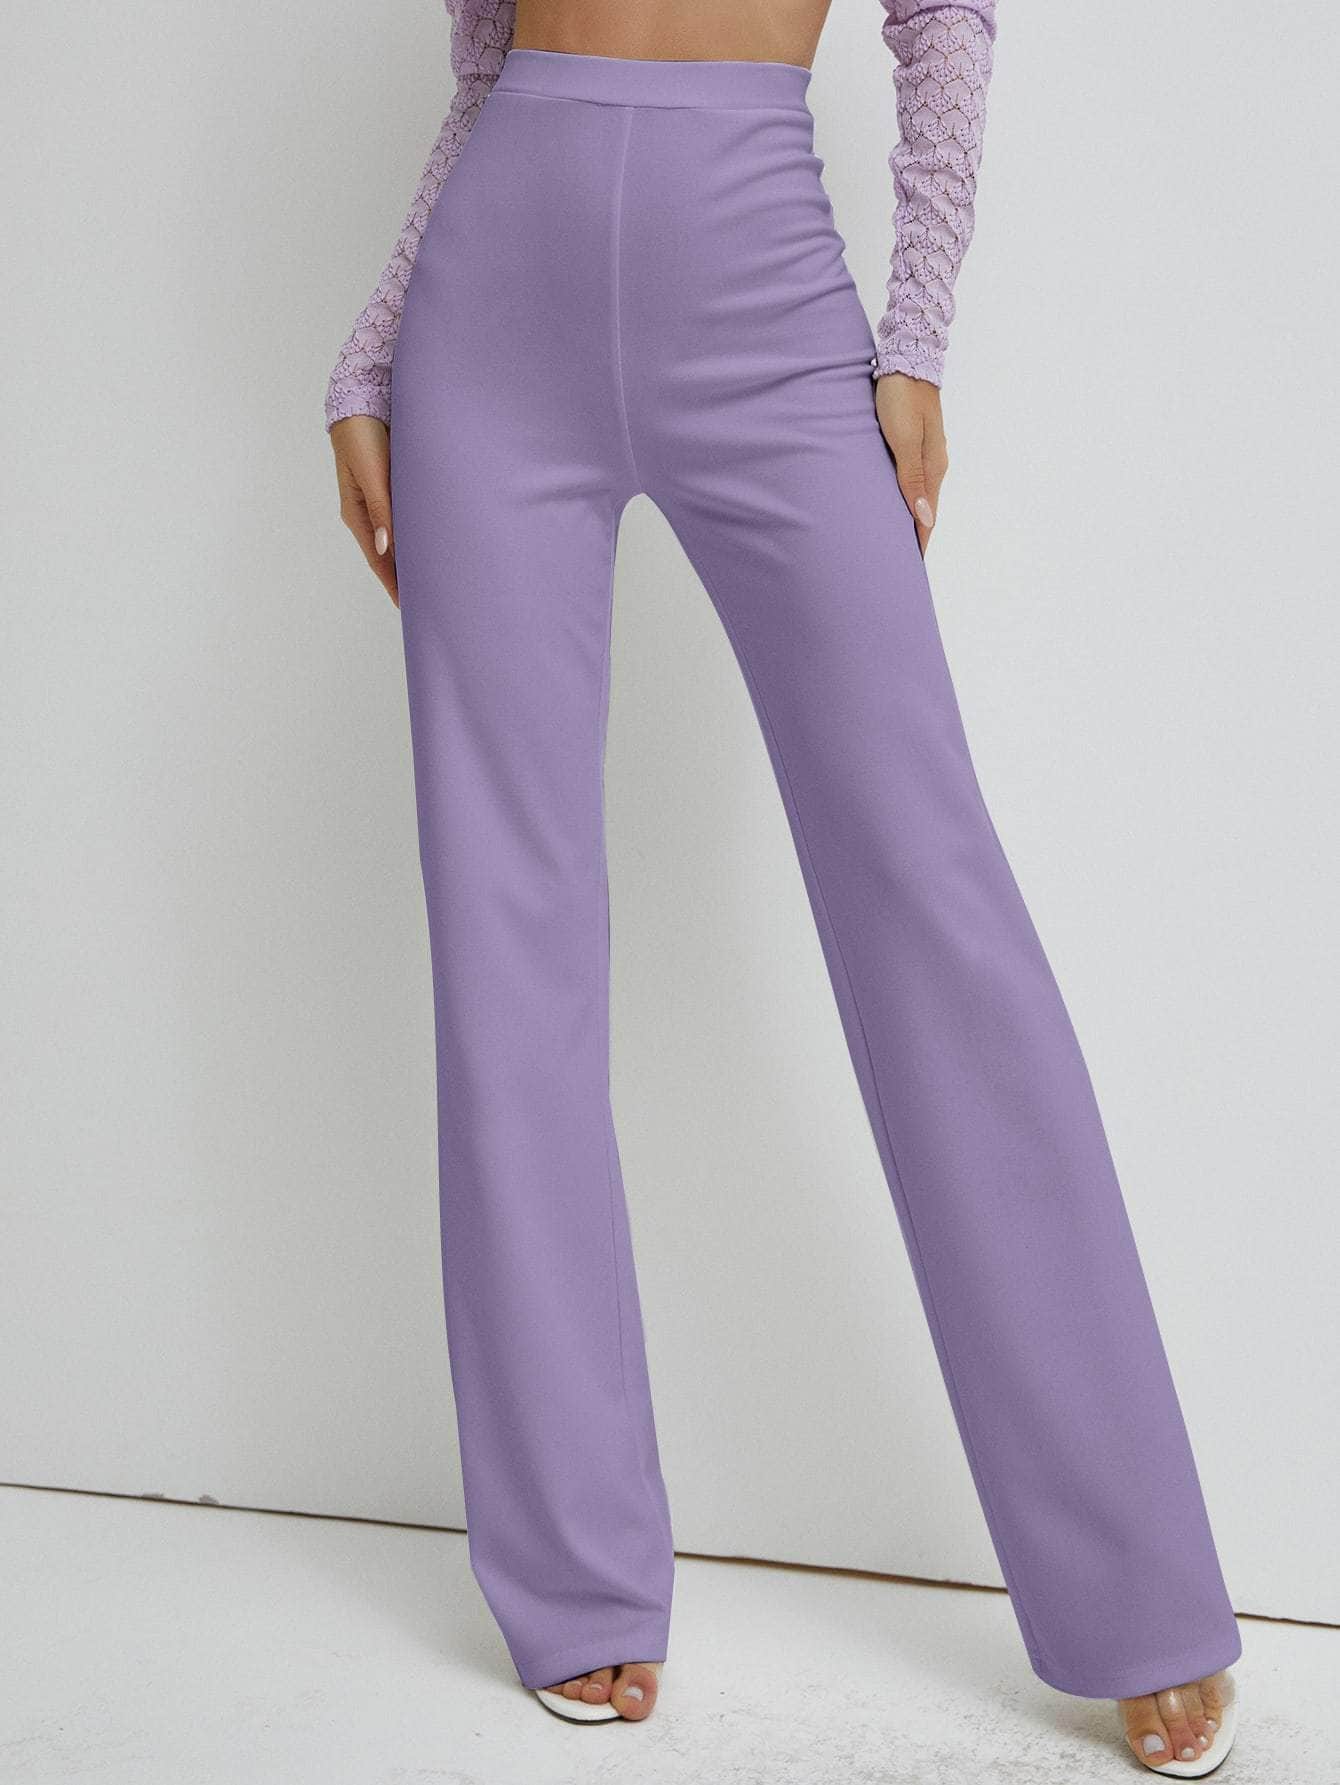 Muybonita.co Mujer/Pantalones/pantaloneselegantes3 Lila Púrpura / S pantalones de pierna recta de cintura alta